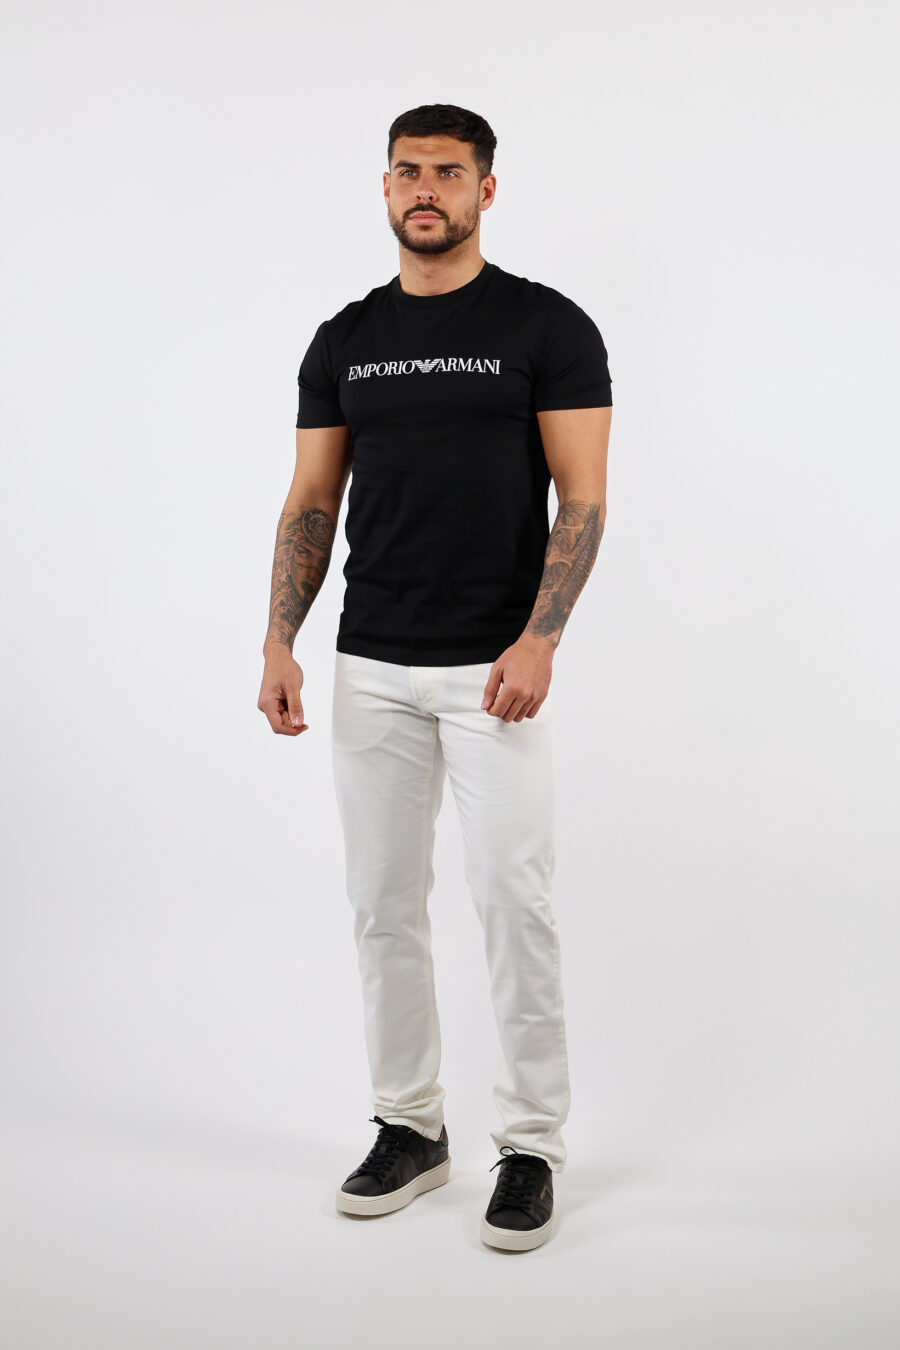 Camiseta negra con maxilogo letras blancas - BLS Fashion 87